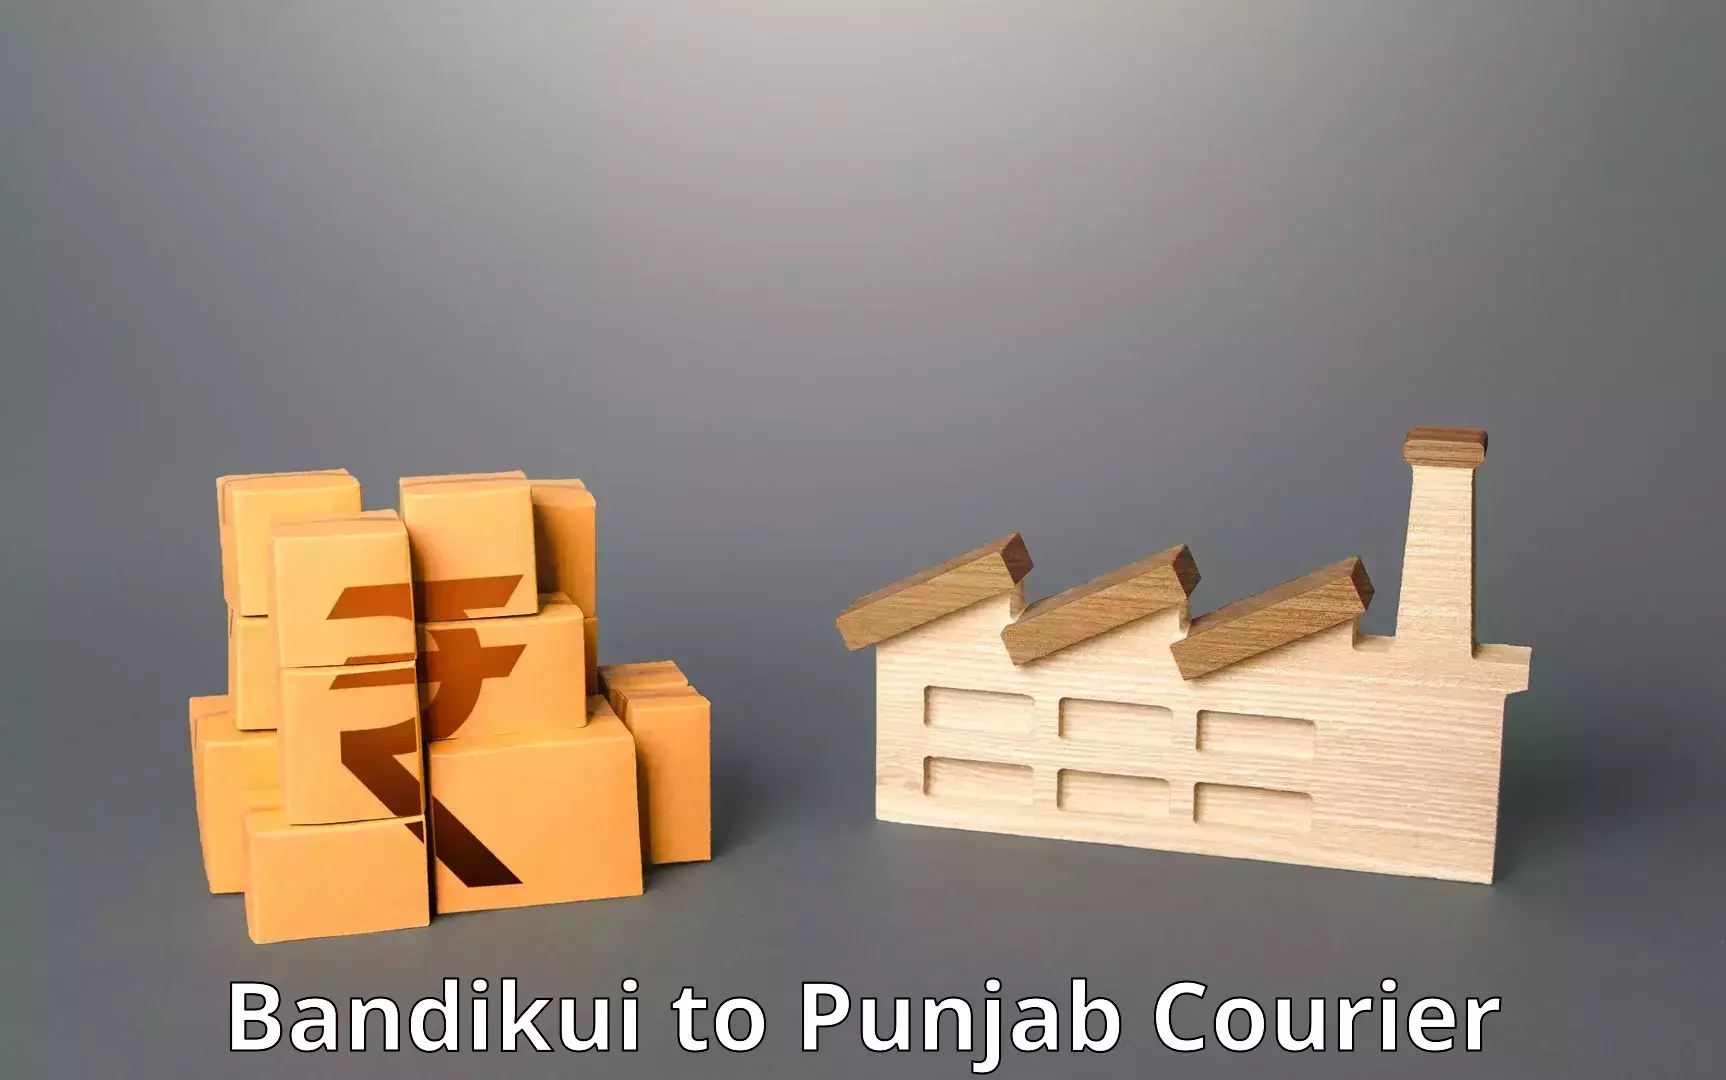 Seamless shipping service Bandikui to Punjab